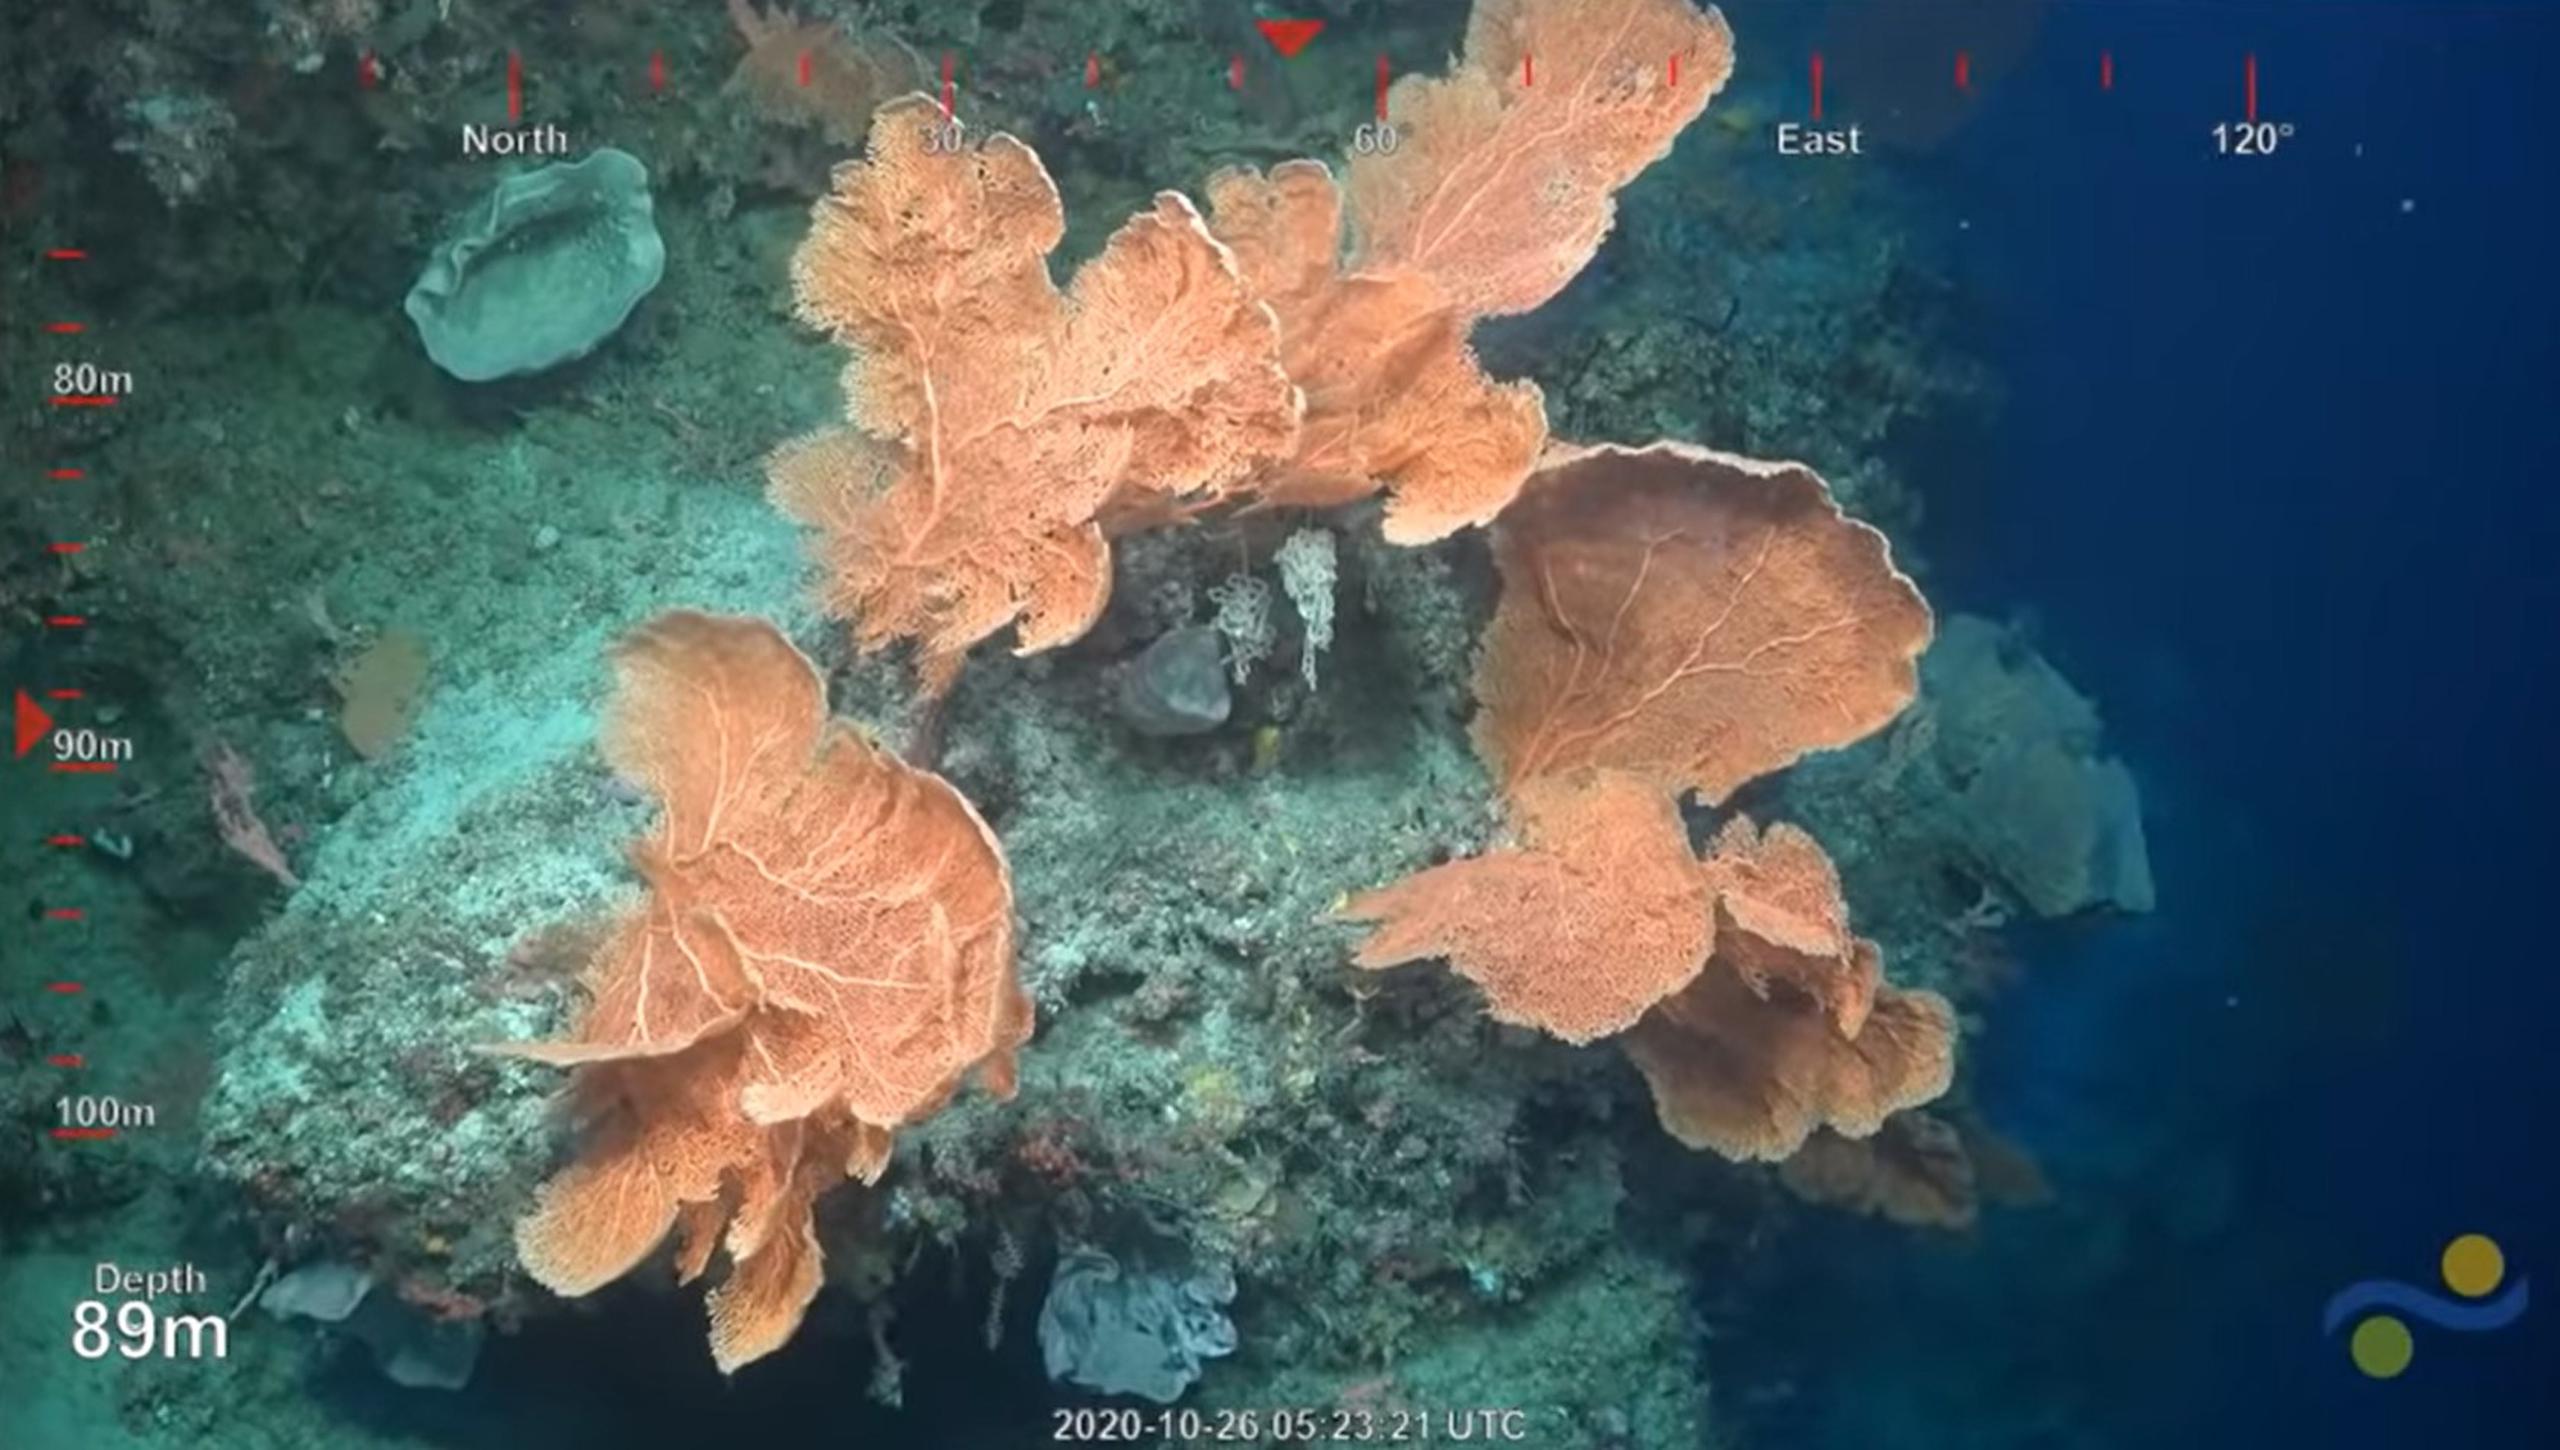 El robot SuBastian permitió grabar y transmitir en vivo el descubrimiento del enorme coral.